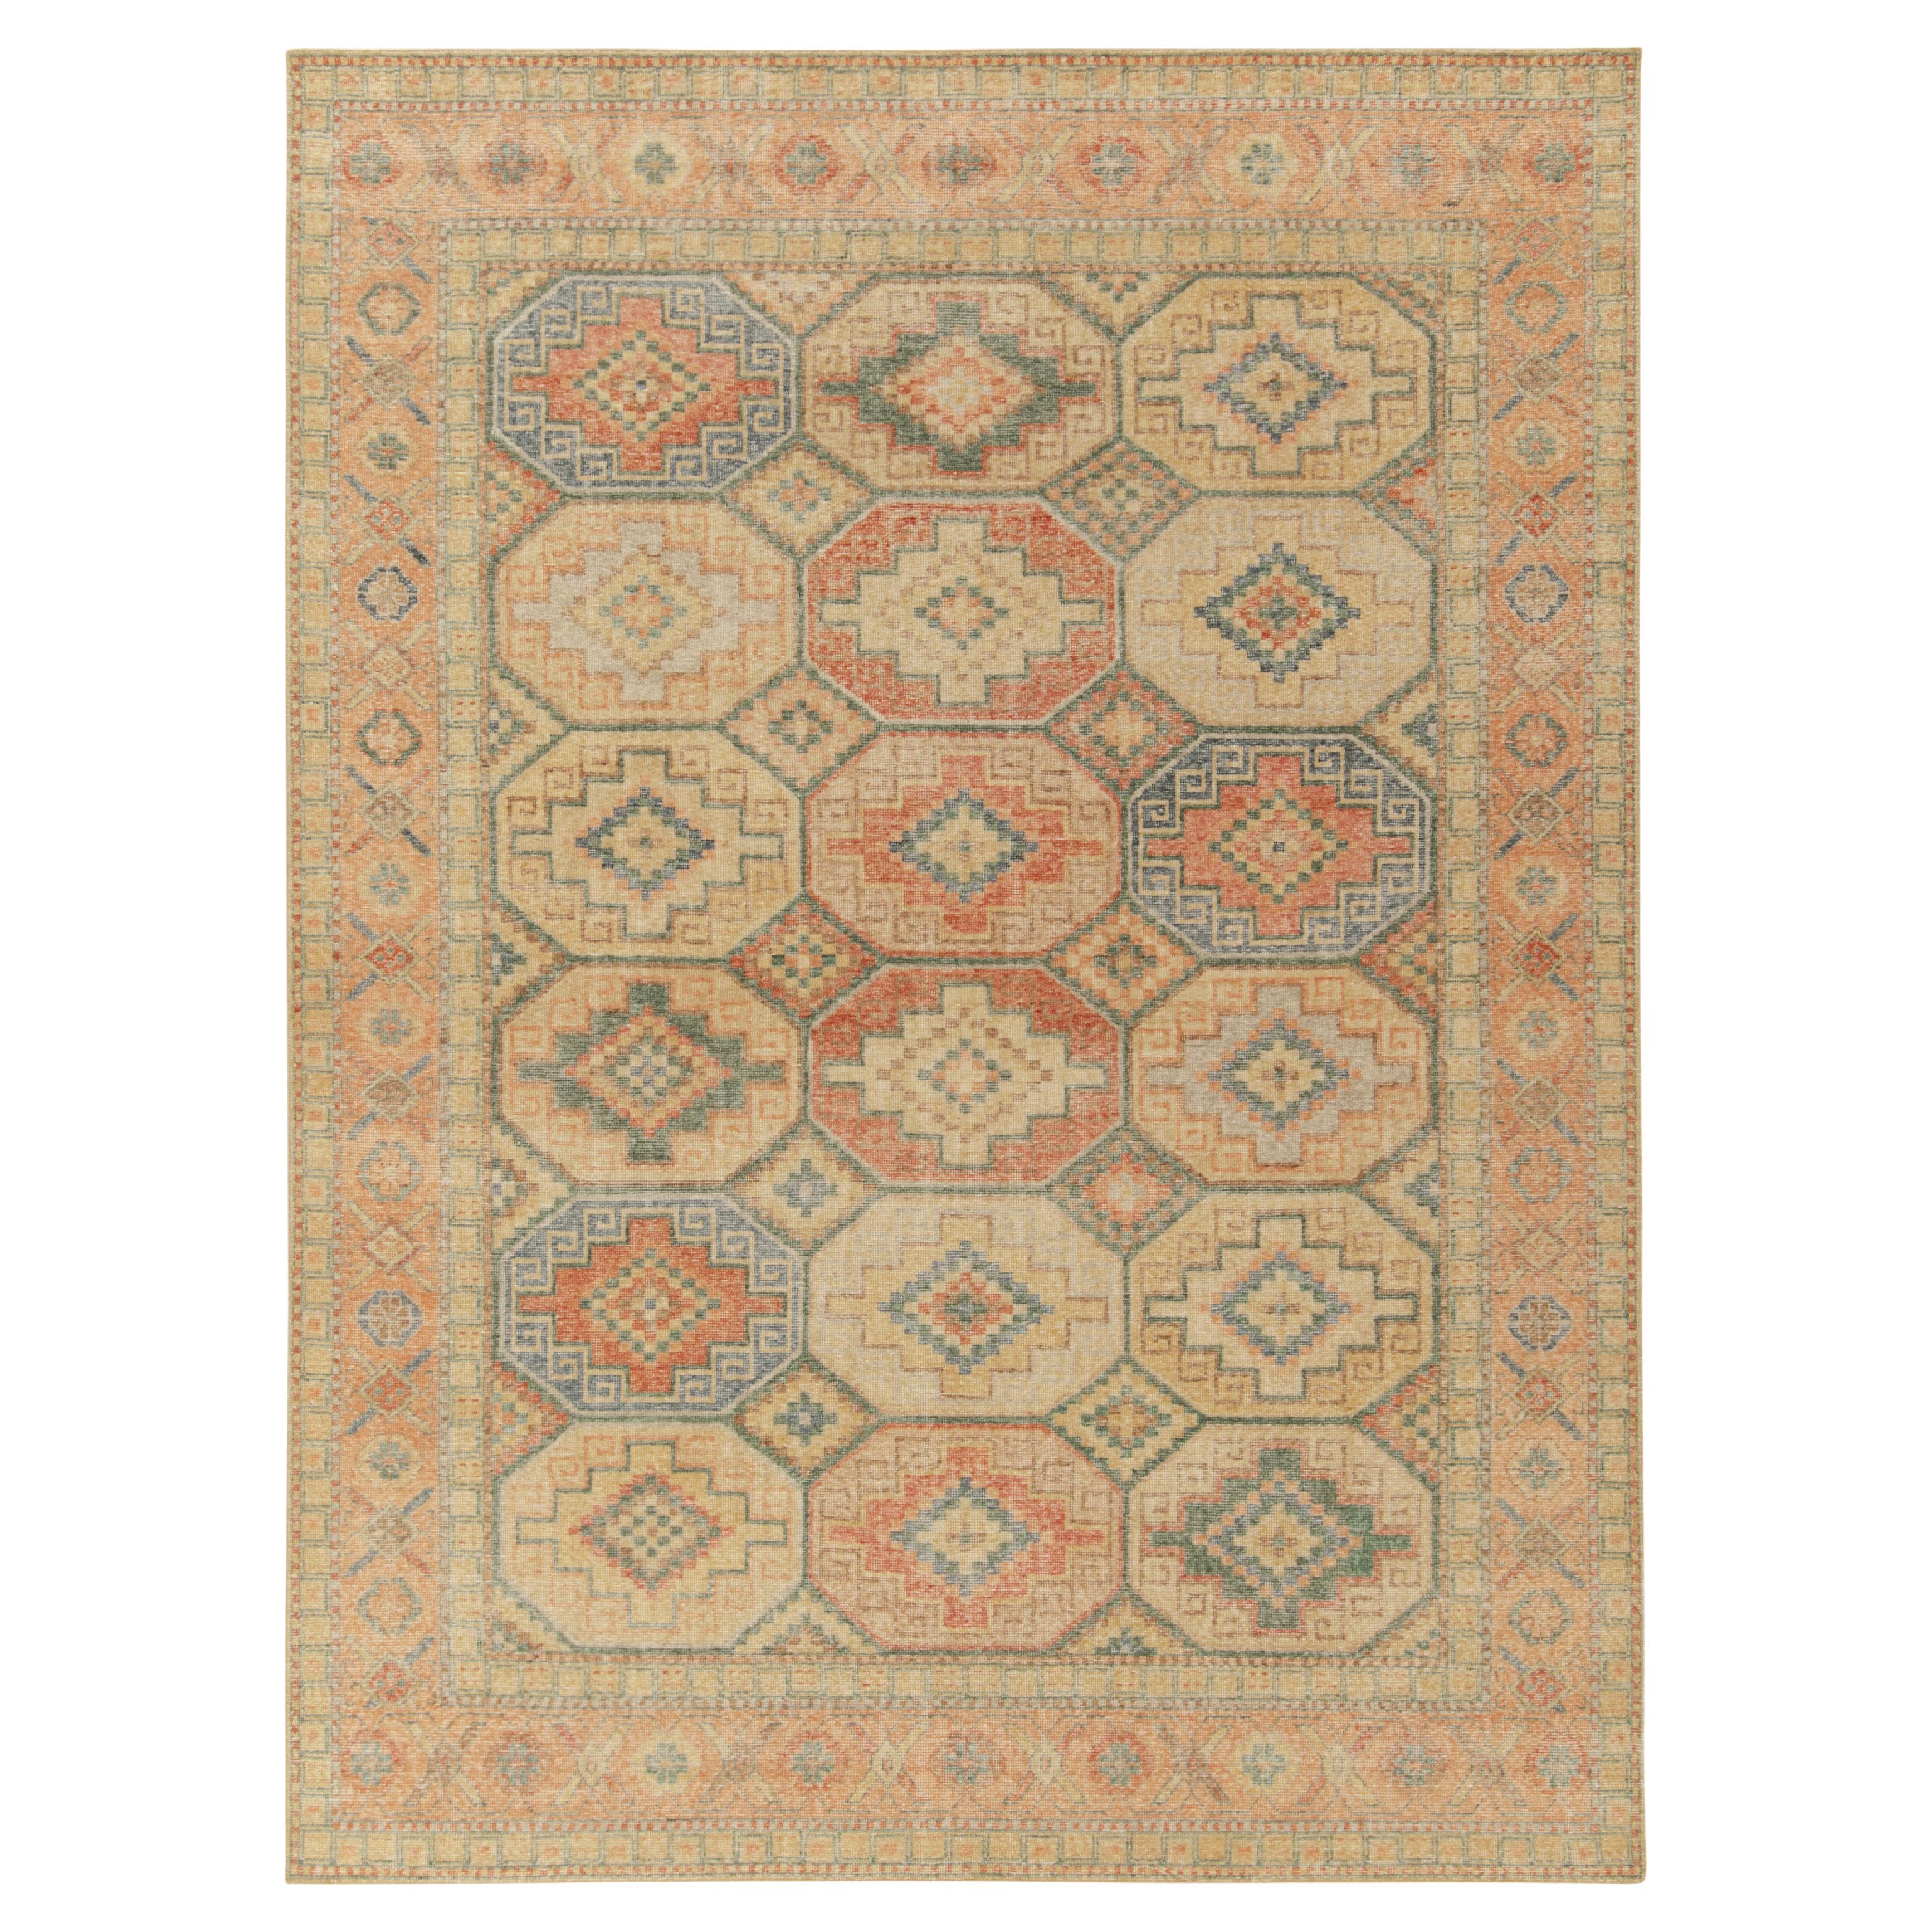 Teppich & Kelim-Teppich im Distressed-Stil in Orange, Blau & Beige mit geometrischem Muster